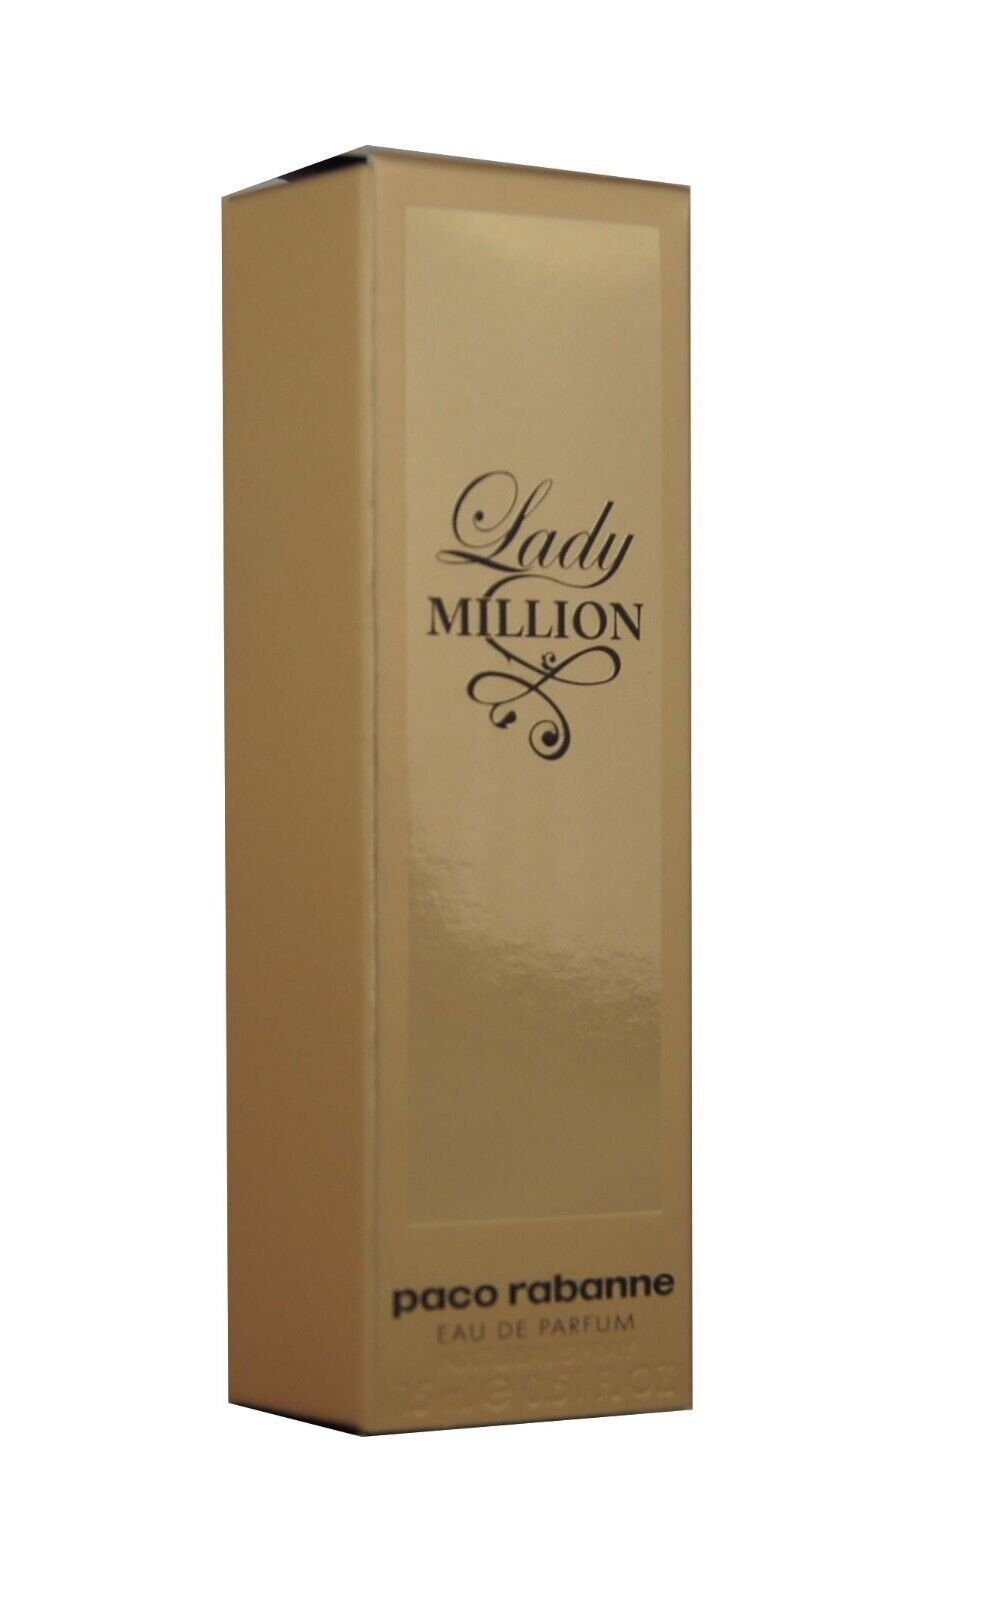 paco rabanne Eau de Parfum de Lady Million 15ml. Paco Eau Rabanne edp Parfum